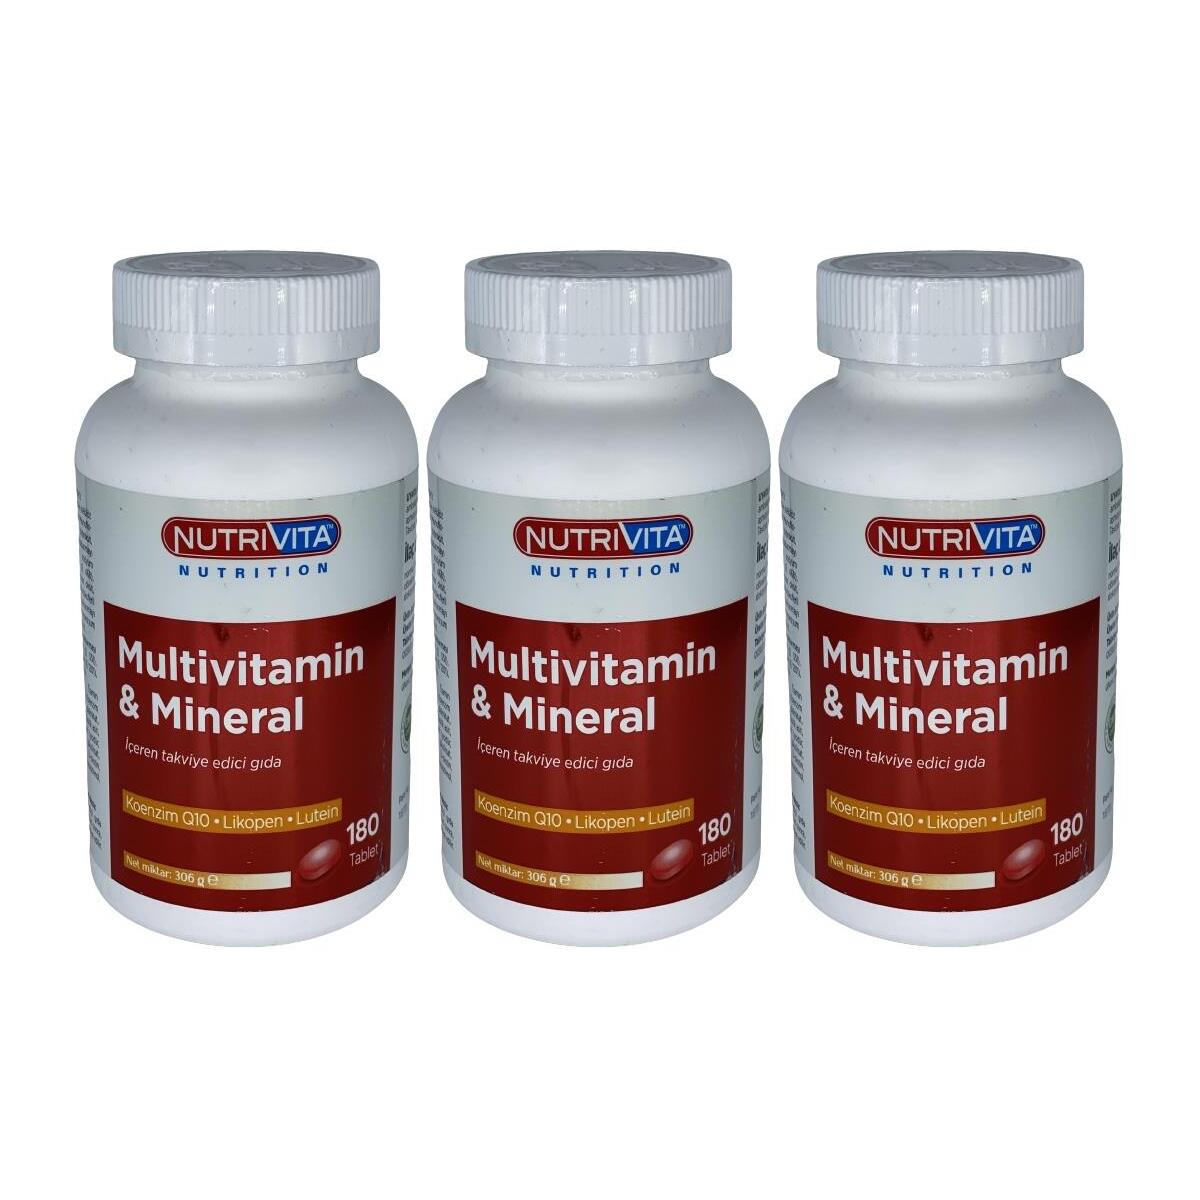 Nutrivita Nutrition Multivitamin Mineral 3X180 Tablet